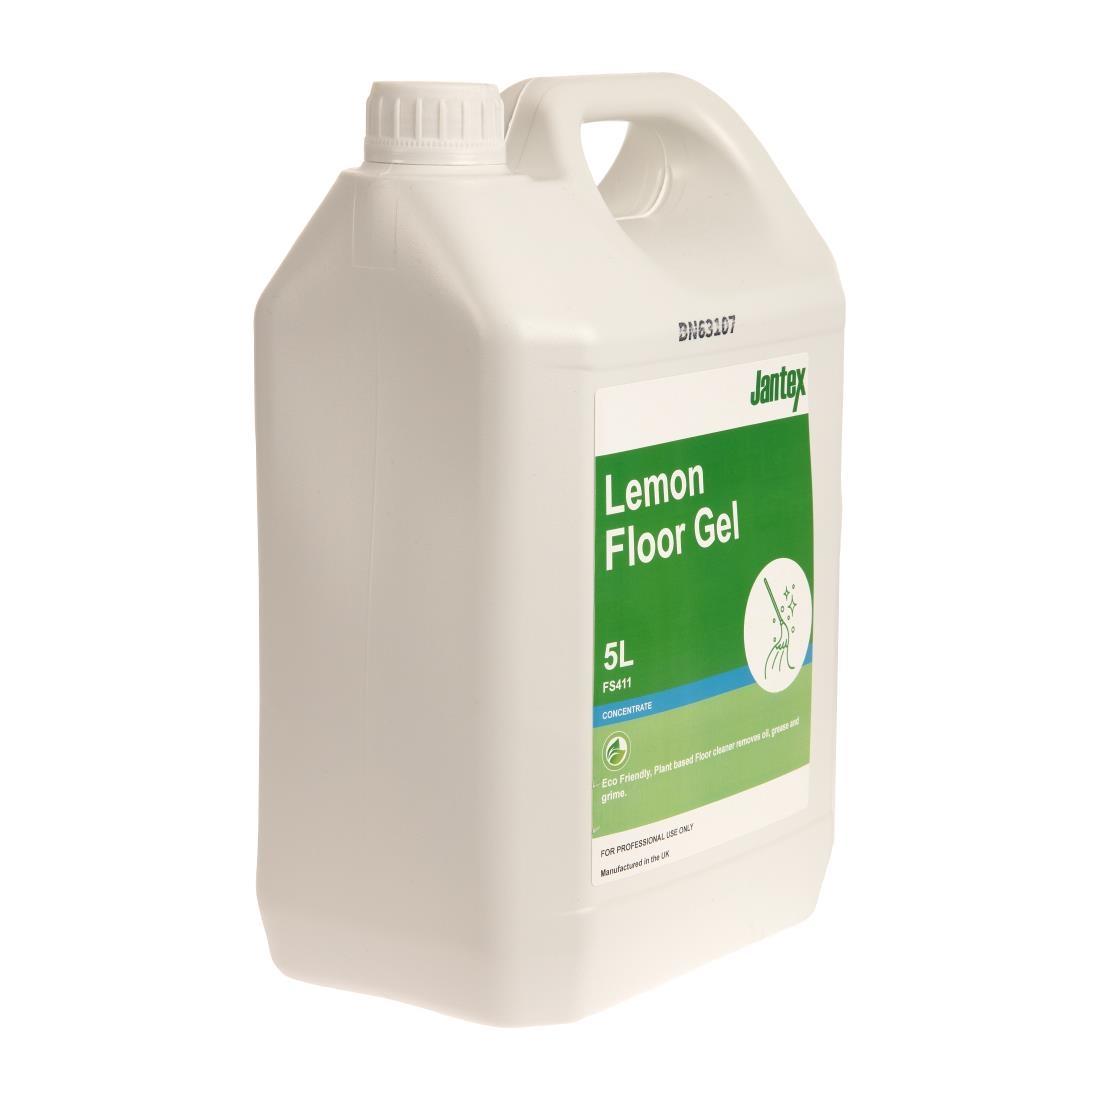 Jantex Green Lemon Floor Gel Cleaner Concentrate 5Ltr - FS411  - 2